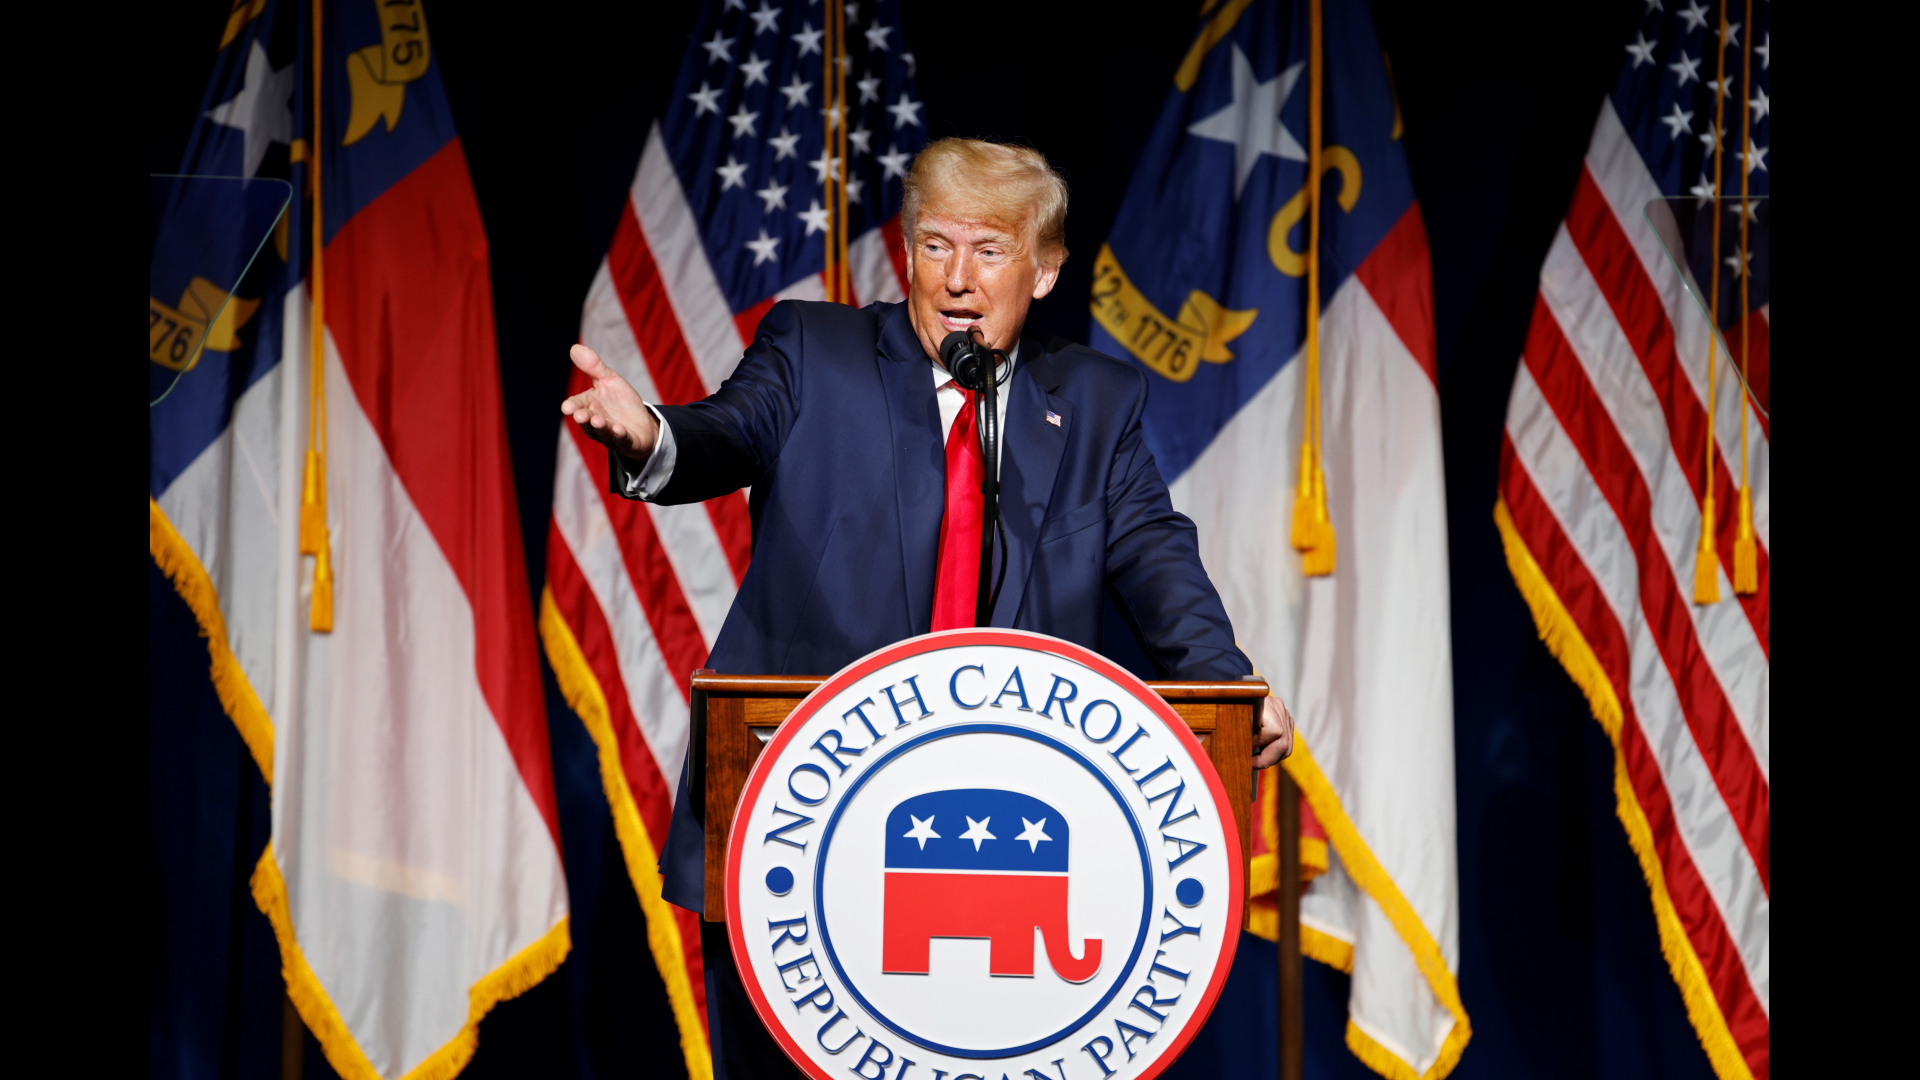 Donald Trump auf dem Podium bei einer Rede auf dem Parteitag der Republikaner in Greenville. | REUTERS